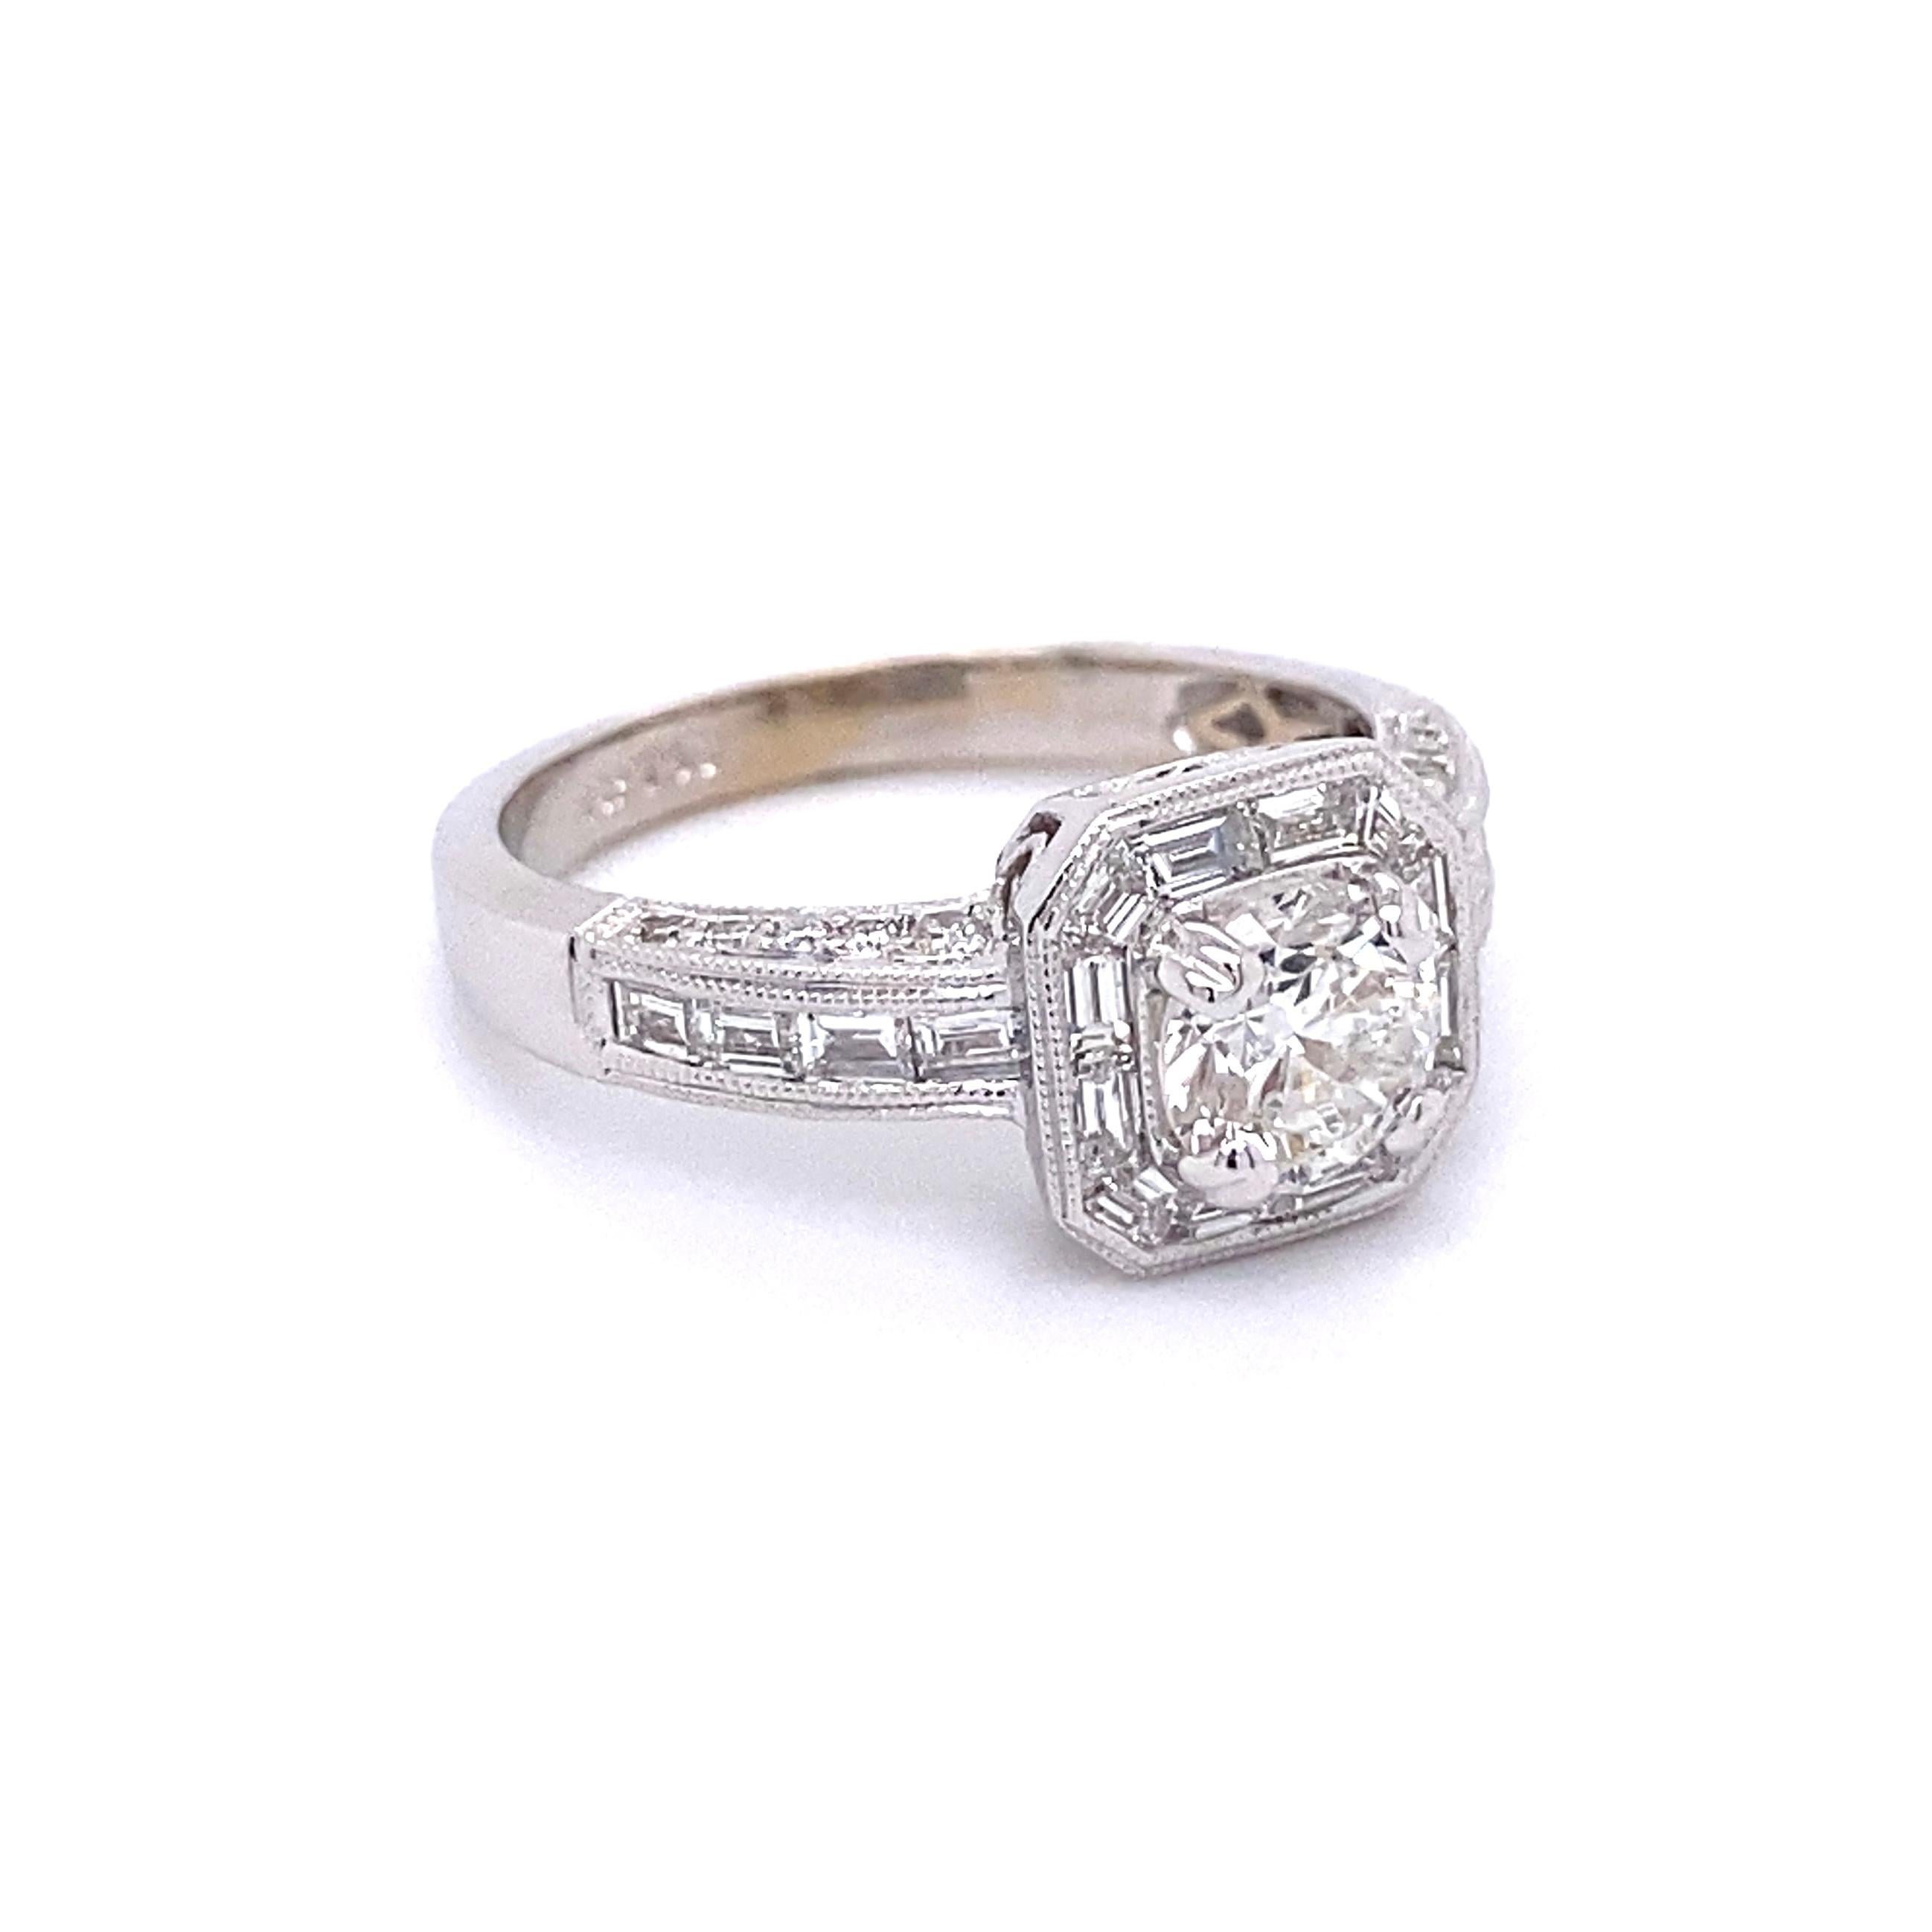 Diamond GIA Solitaire Art Deco Gold Ring Estate Fine Jewelry Simply Beautiful ! Bague en or blanc 18 carats avec solitaire en diamant finement détaillé. Au centre se trouve un diamant GIA rond et brillant, pesant environ 0.83 carat, F-I1 ;